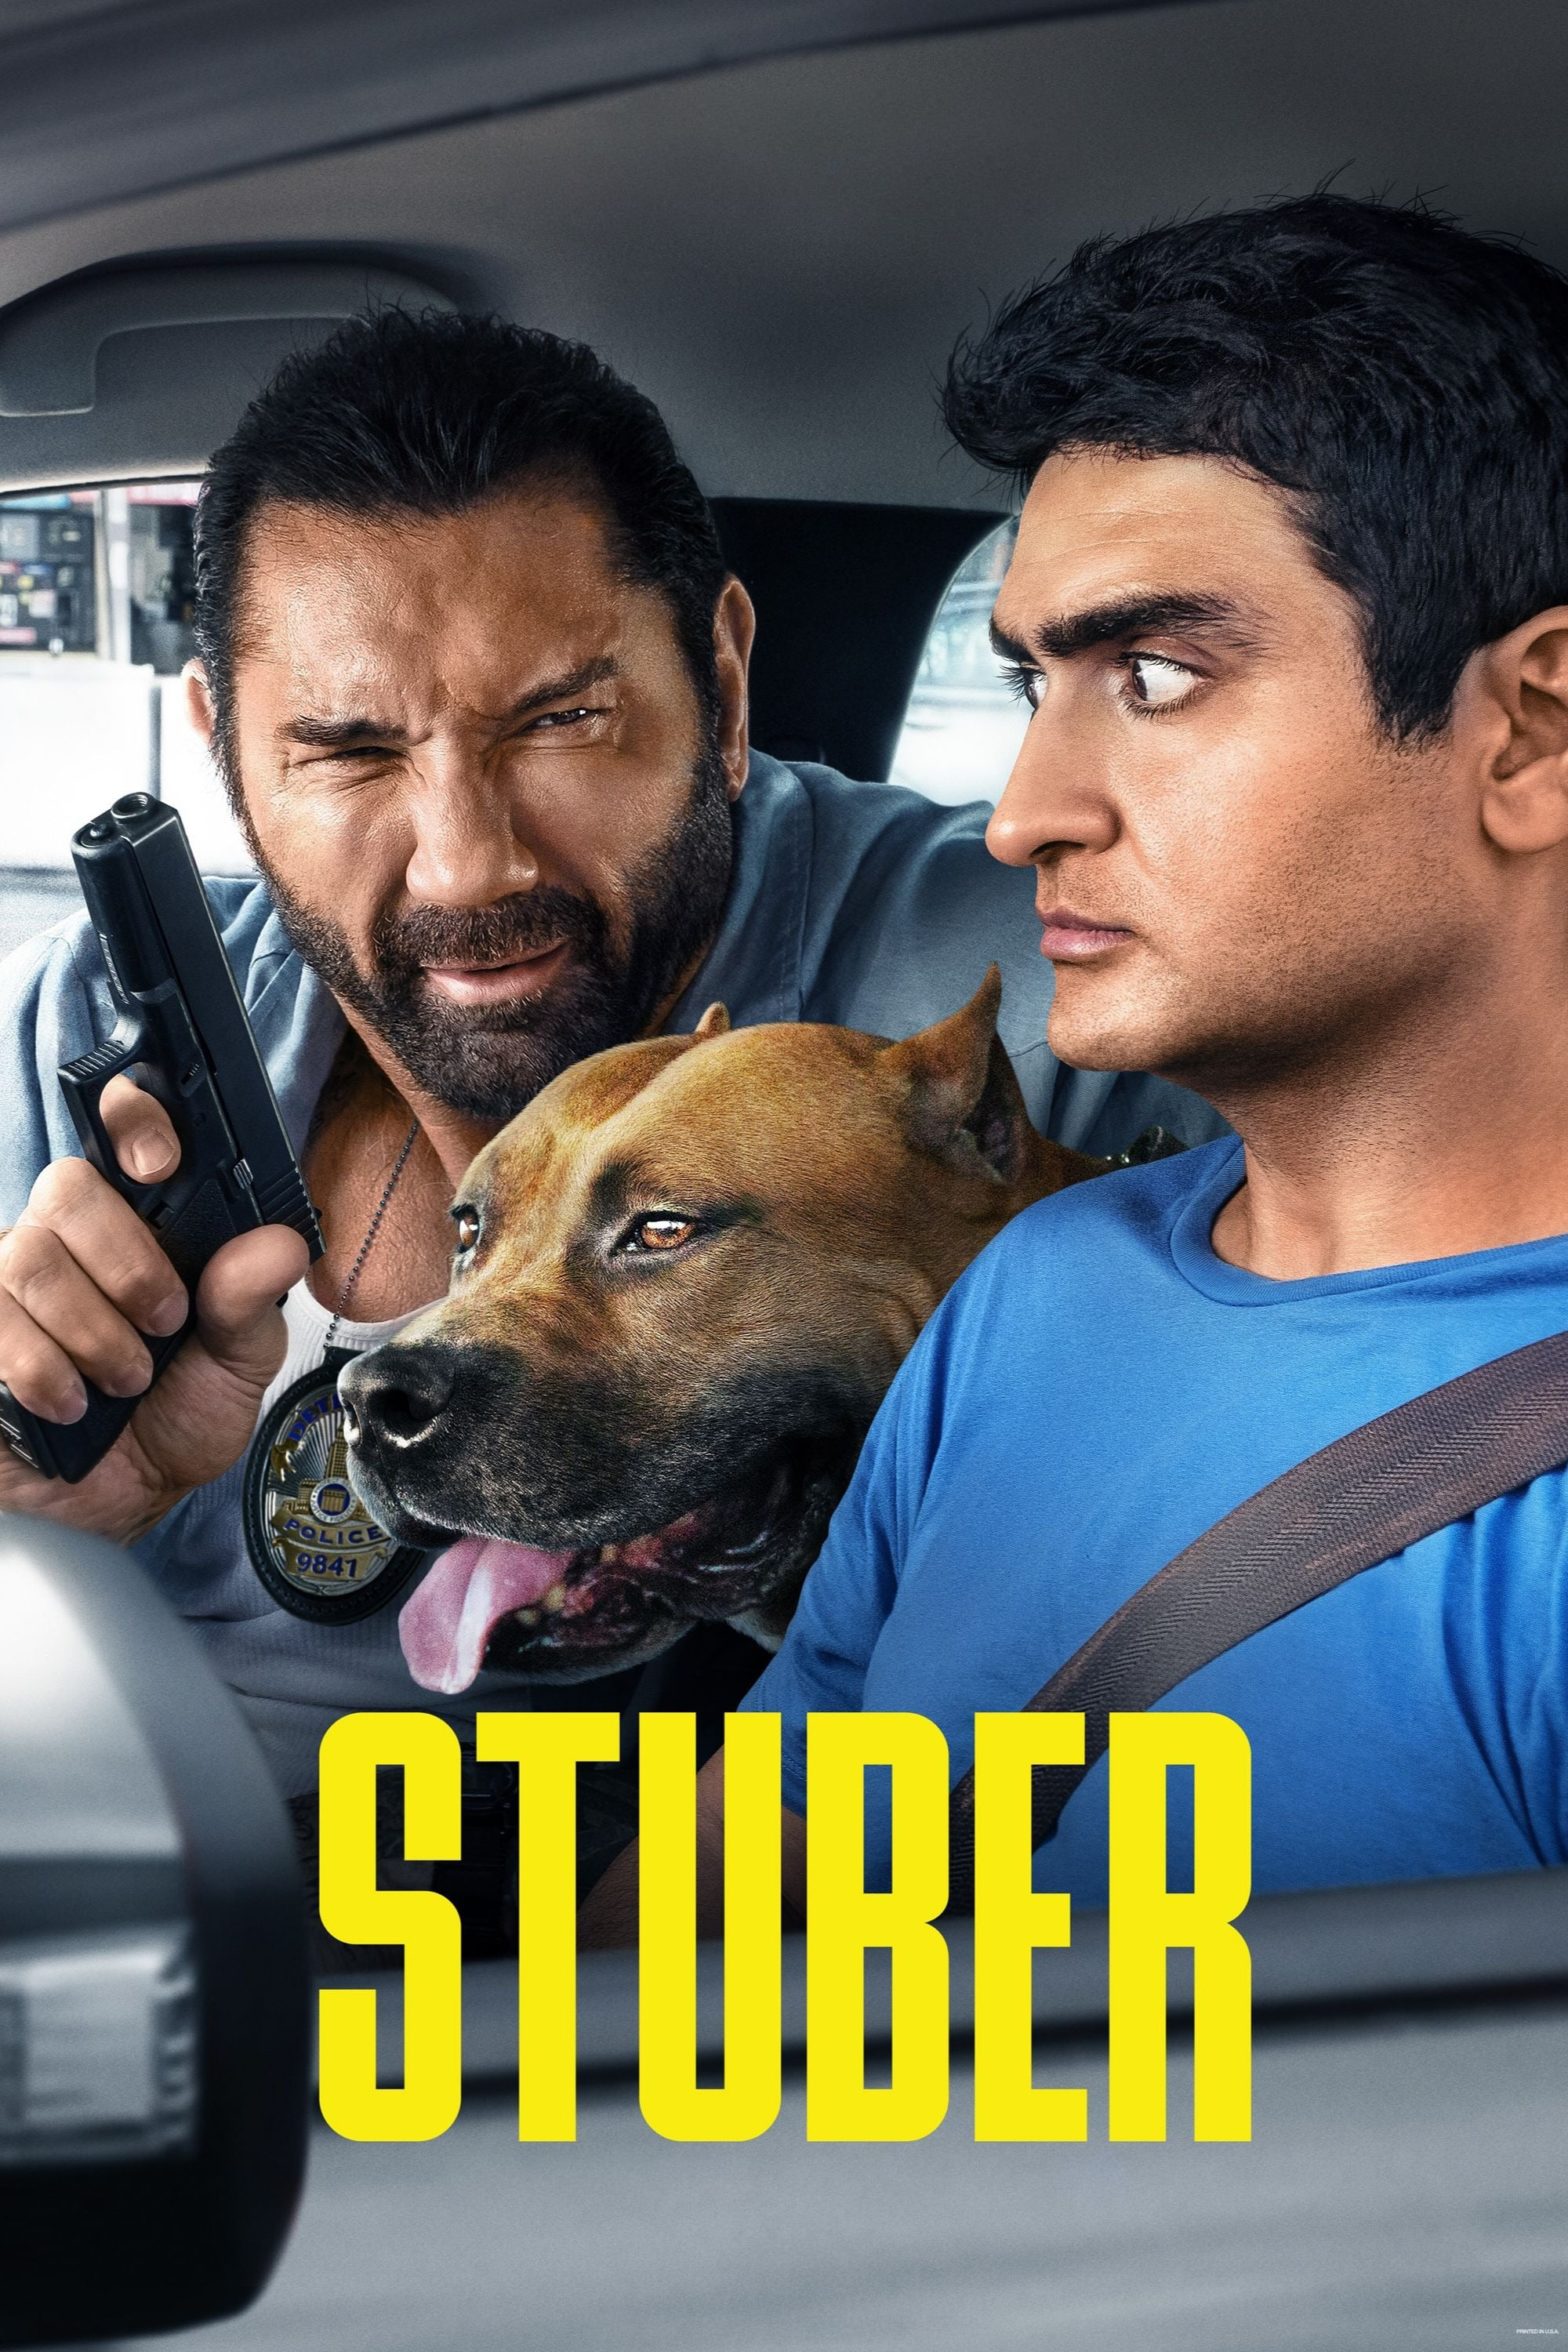 Poster for the movie "Stuber"